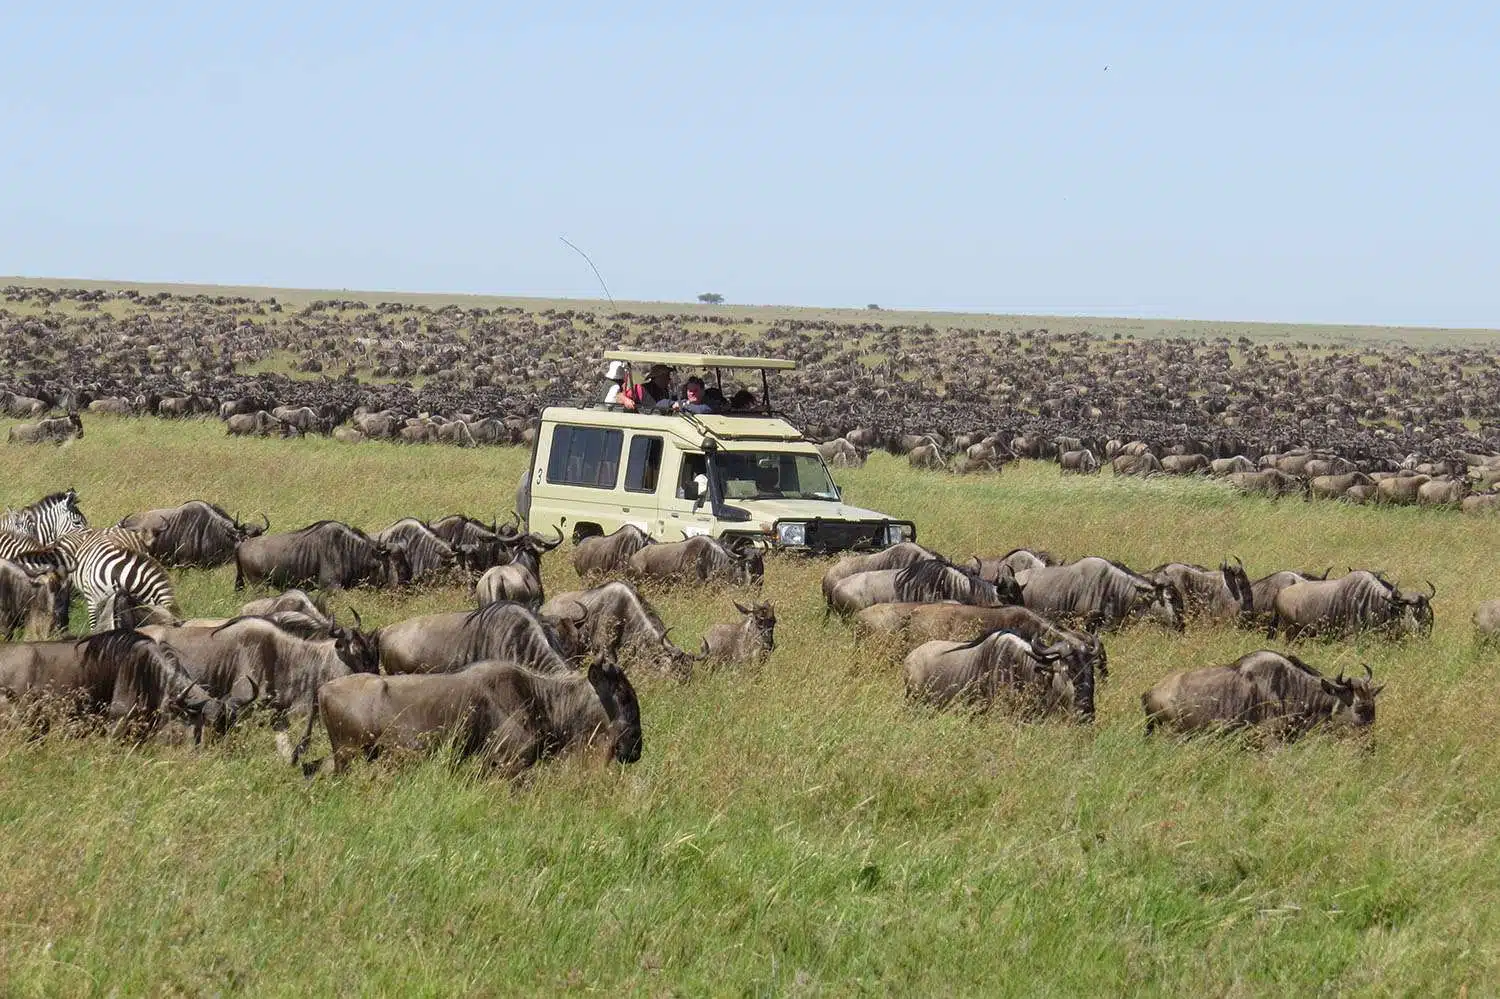 The Serengeti Plains